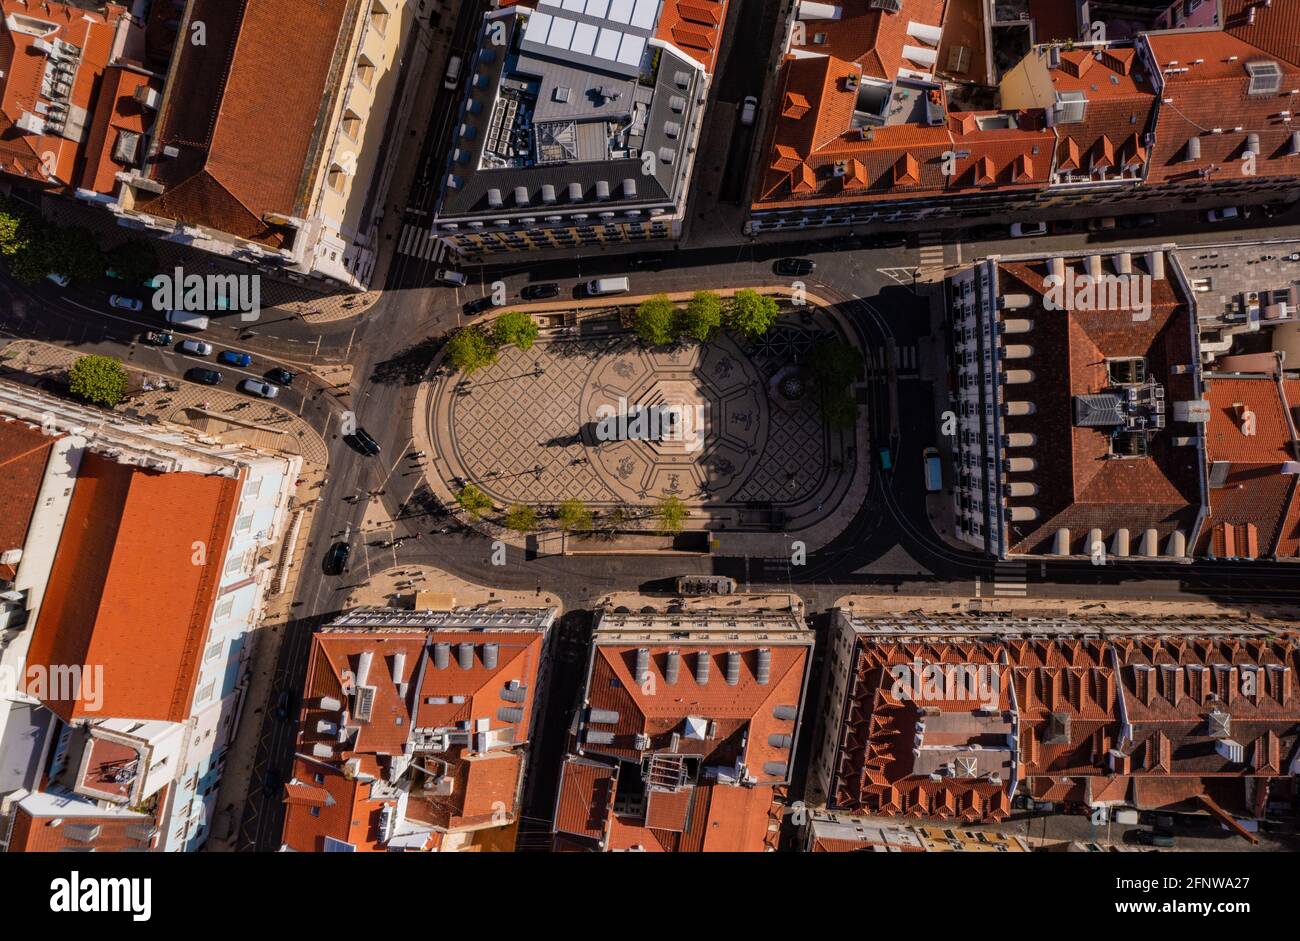 Blick von oben auf den Marktplatz in Lissabon, Portugal. Dekorativer gefliester Boden mit Ornamenten und Statue auf achteckigem Sockel, der mit einer Straße gesäumt ist. Stockfoto